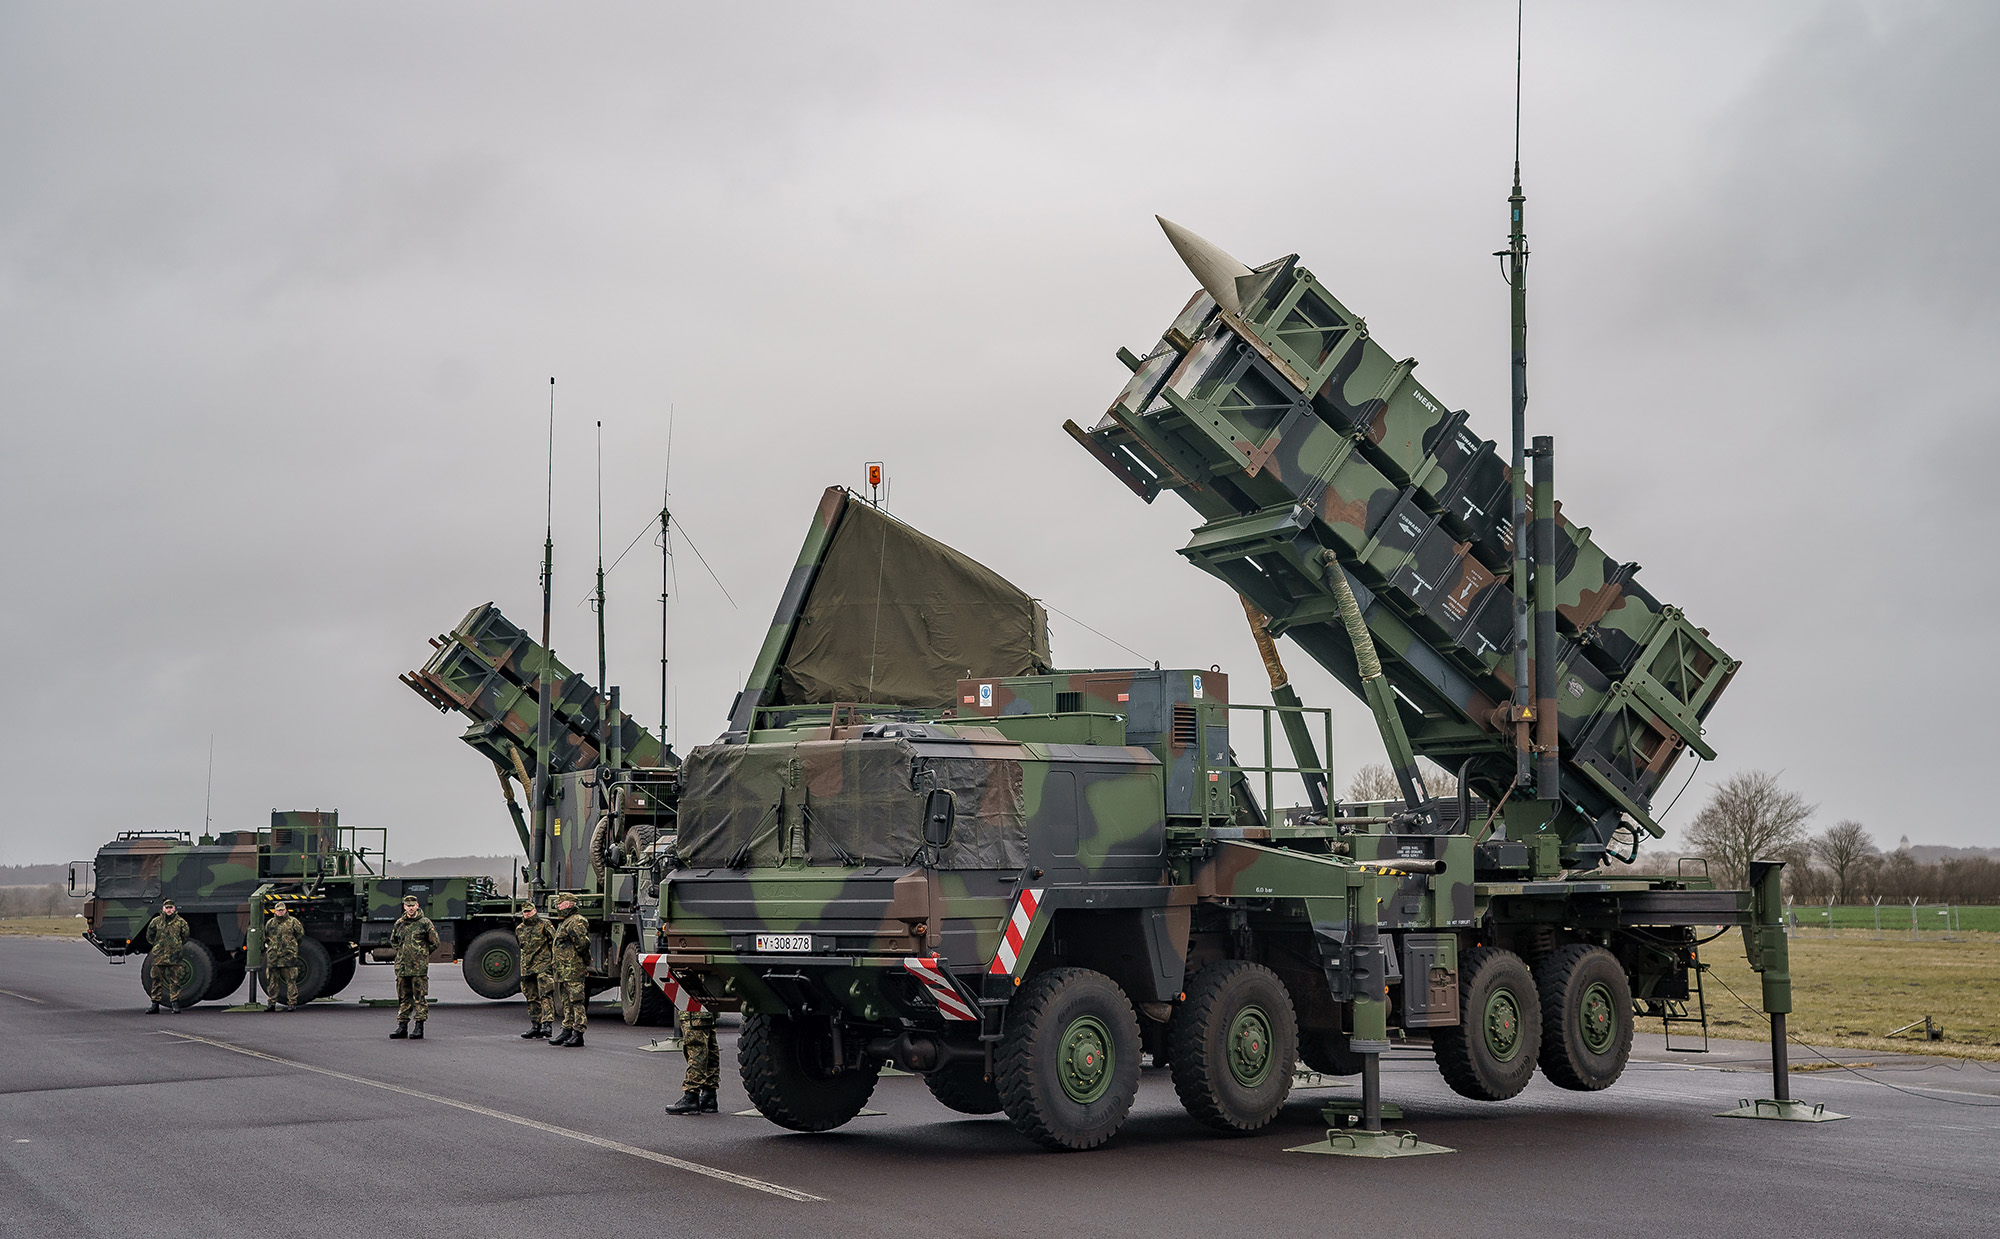 وقفت أنظمة صواريخ باتريوت المضادة للطائرات التابعة لسرب الصواريخ المضادة للطائرات 1 التابع للبوندسوير في مطار شويسينغ العسكري بألمانيا في 17 مارس.